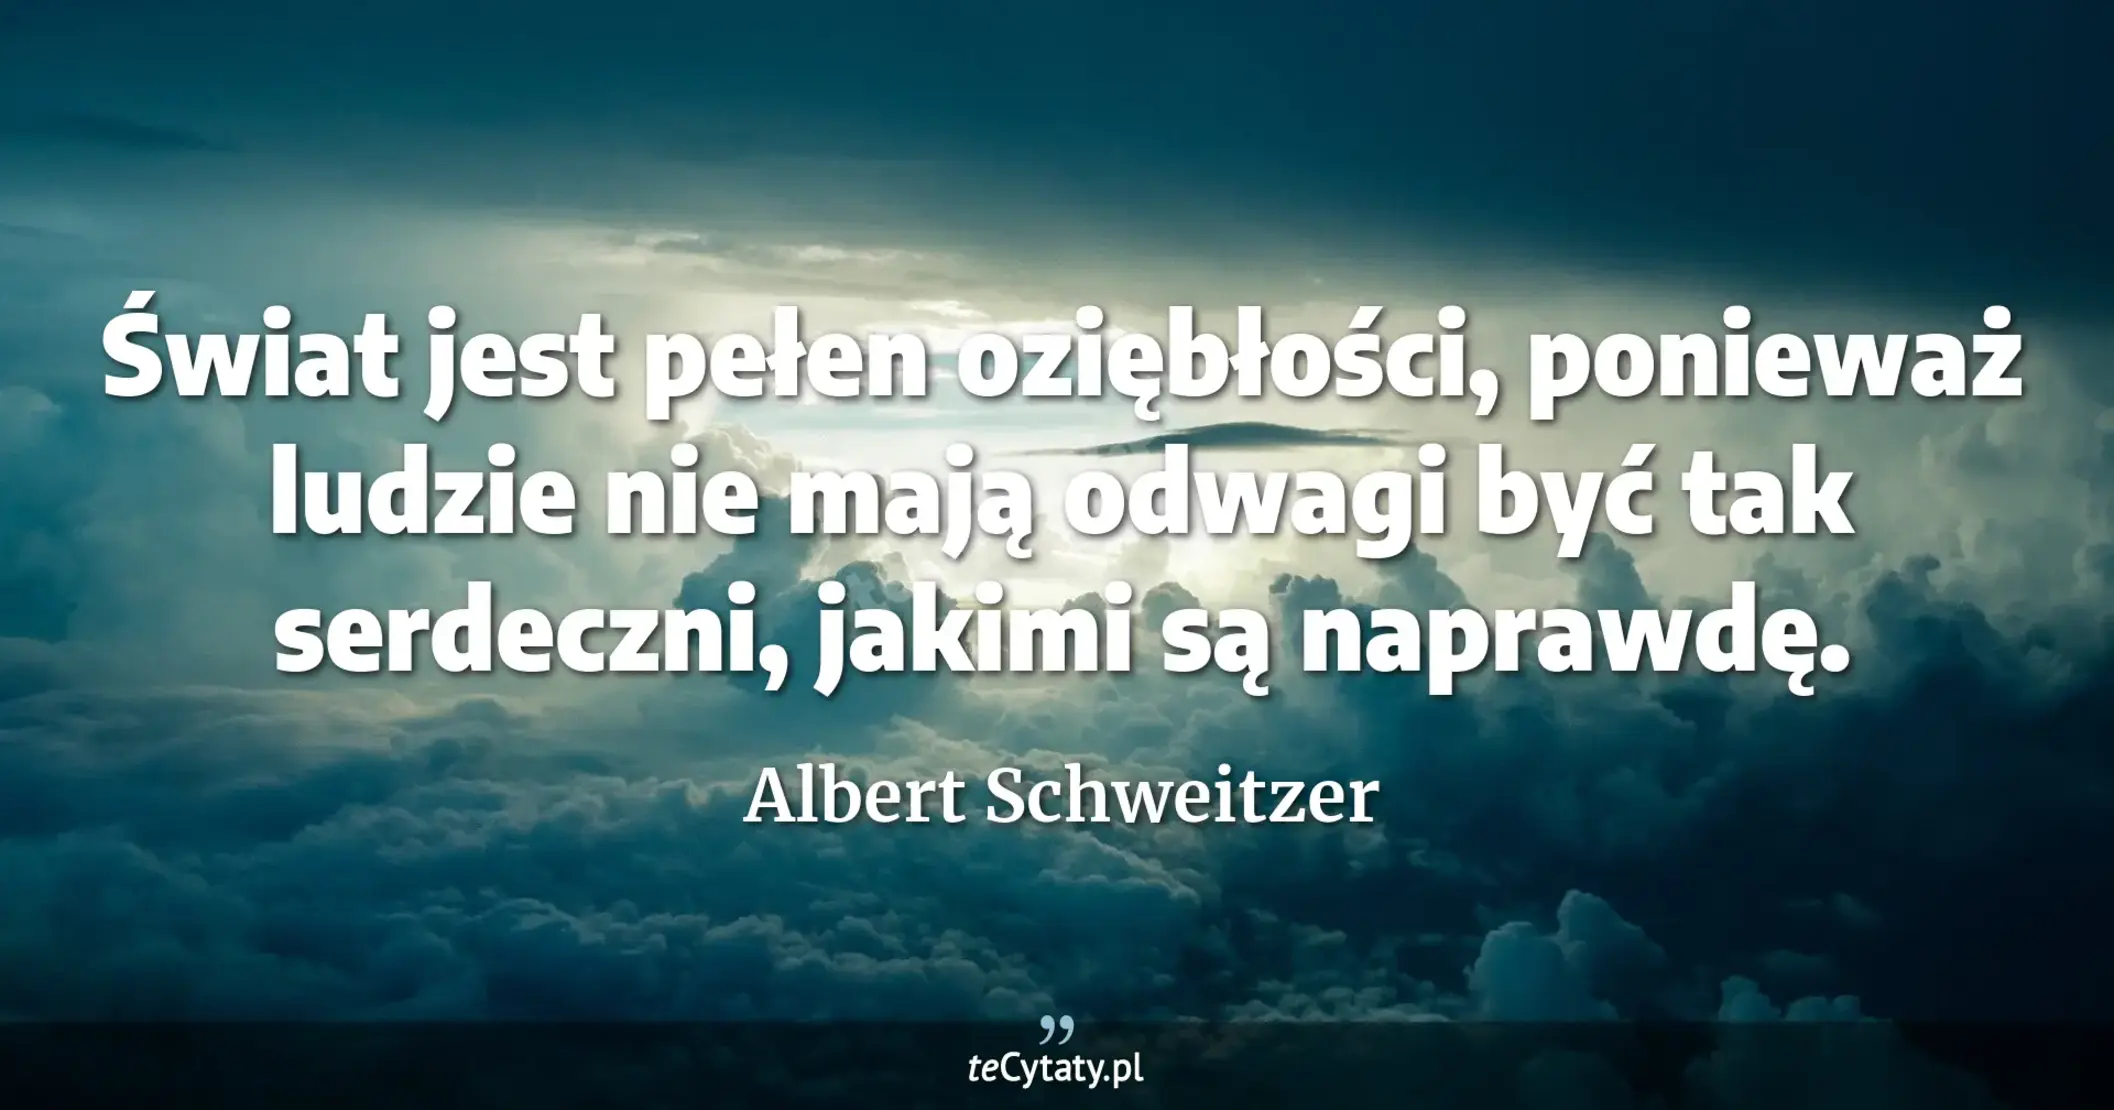 Świat jest pełen oziębłości, ponieważ ludzie nie mają odwagi być tak serdeczni, jakimi są naprawdę. - Albert Schweitzer